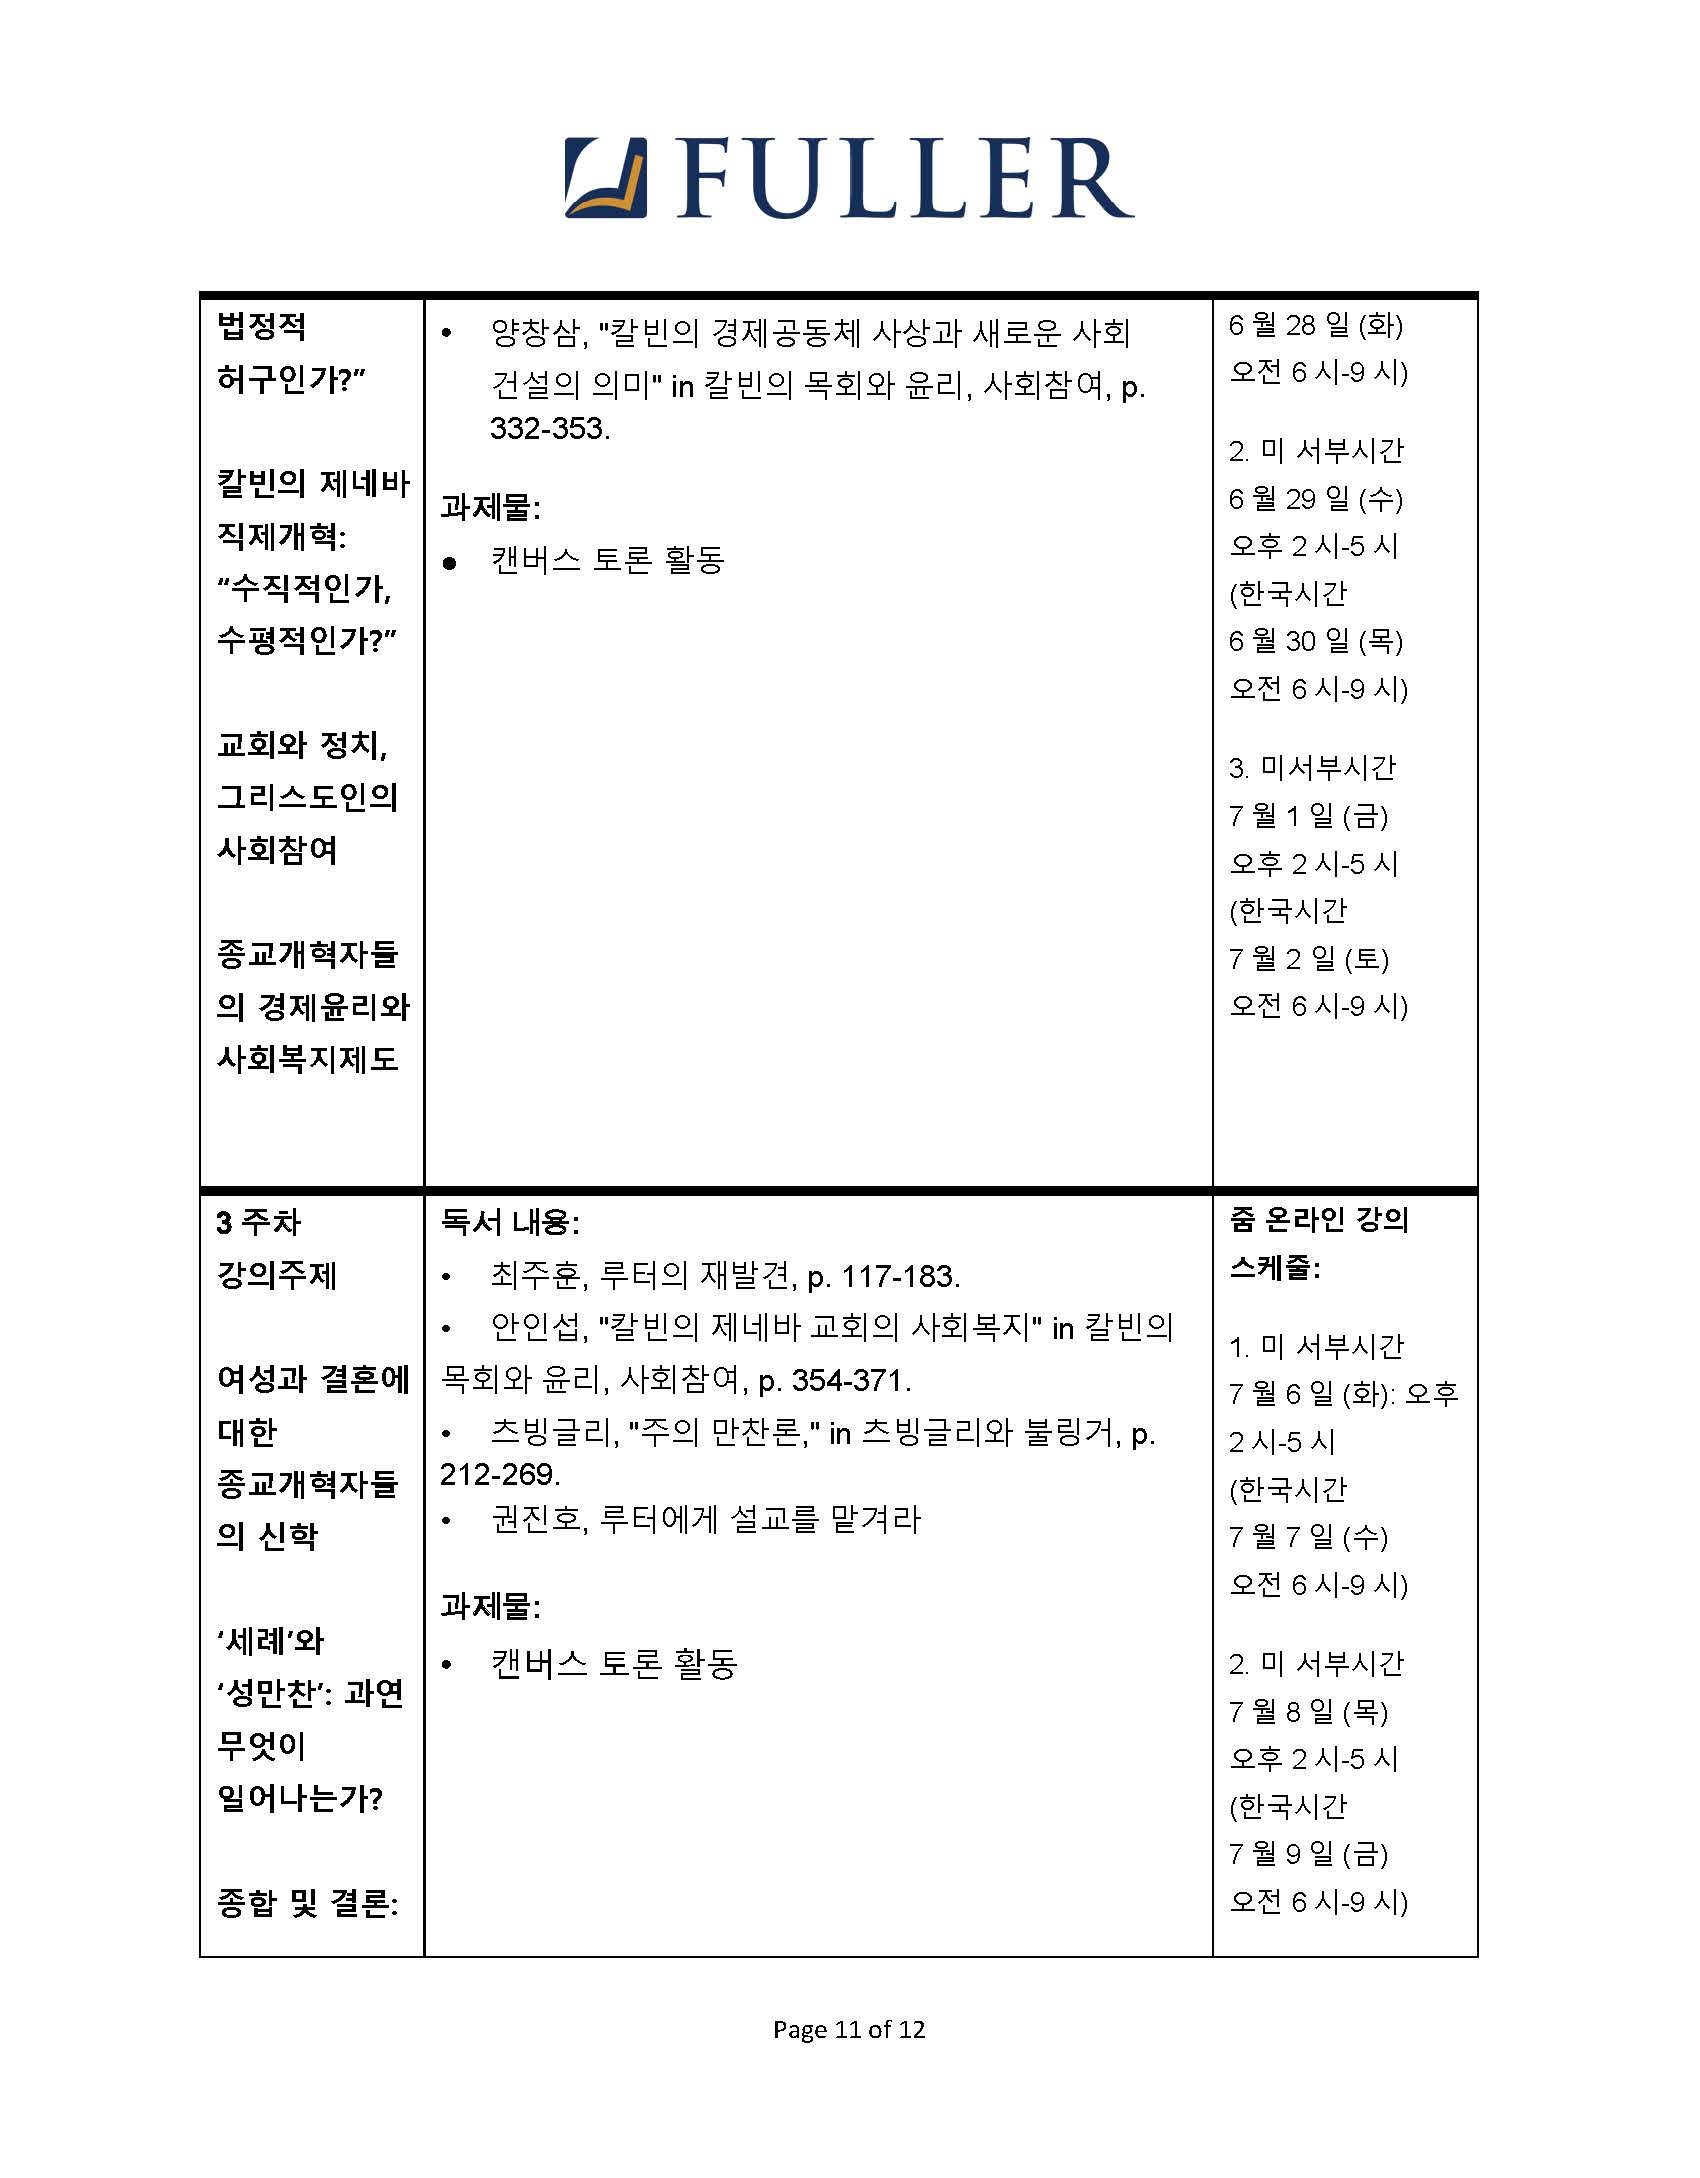 CH743 Syllabus (Korean) (1)_Page_11.jpg